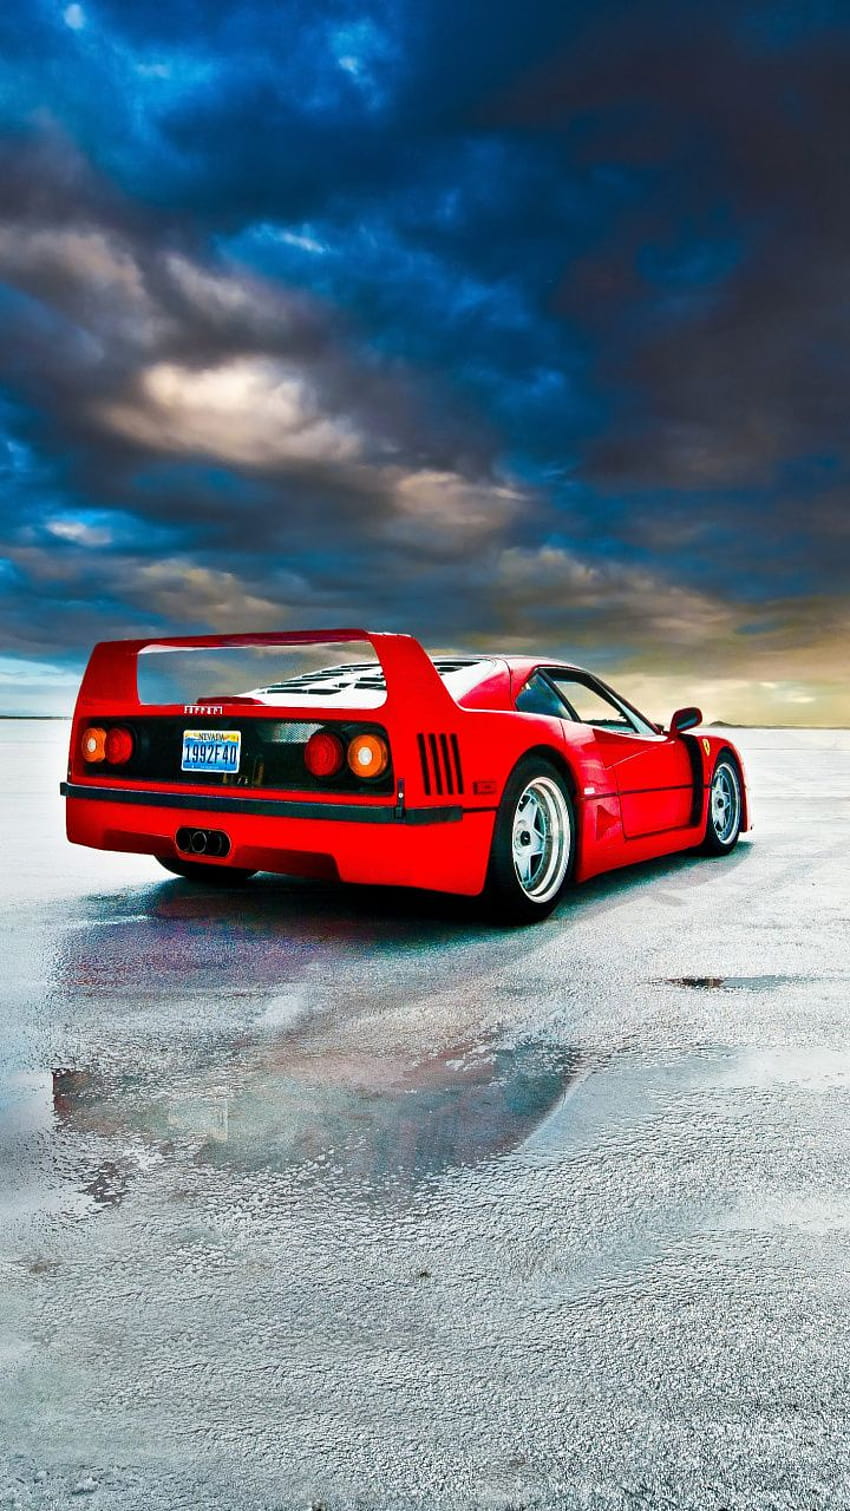 Nếu bạn thích những chiếc xe cổ điển, thì bức tranh về chiếc Ferrari F40 mặt sau chắc chắn sẽ làm bạn phải kinh ngạc. Hãy nhìn vào chiếc xe này và cảm nhận sự yêu mến từ chủ nhân của nó. Trải nghiệm câu chuyện của xe cổ điển này trên con đường đầy thử thách. 